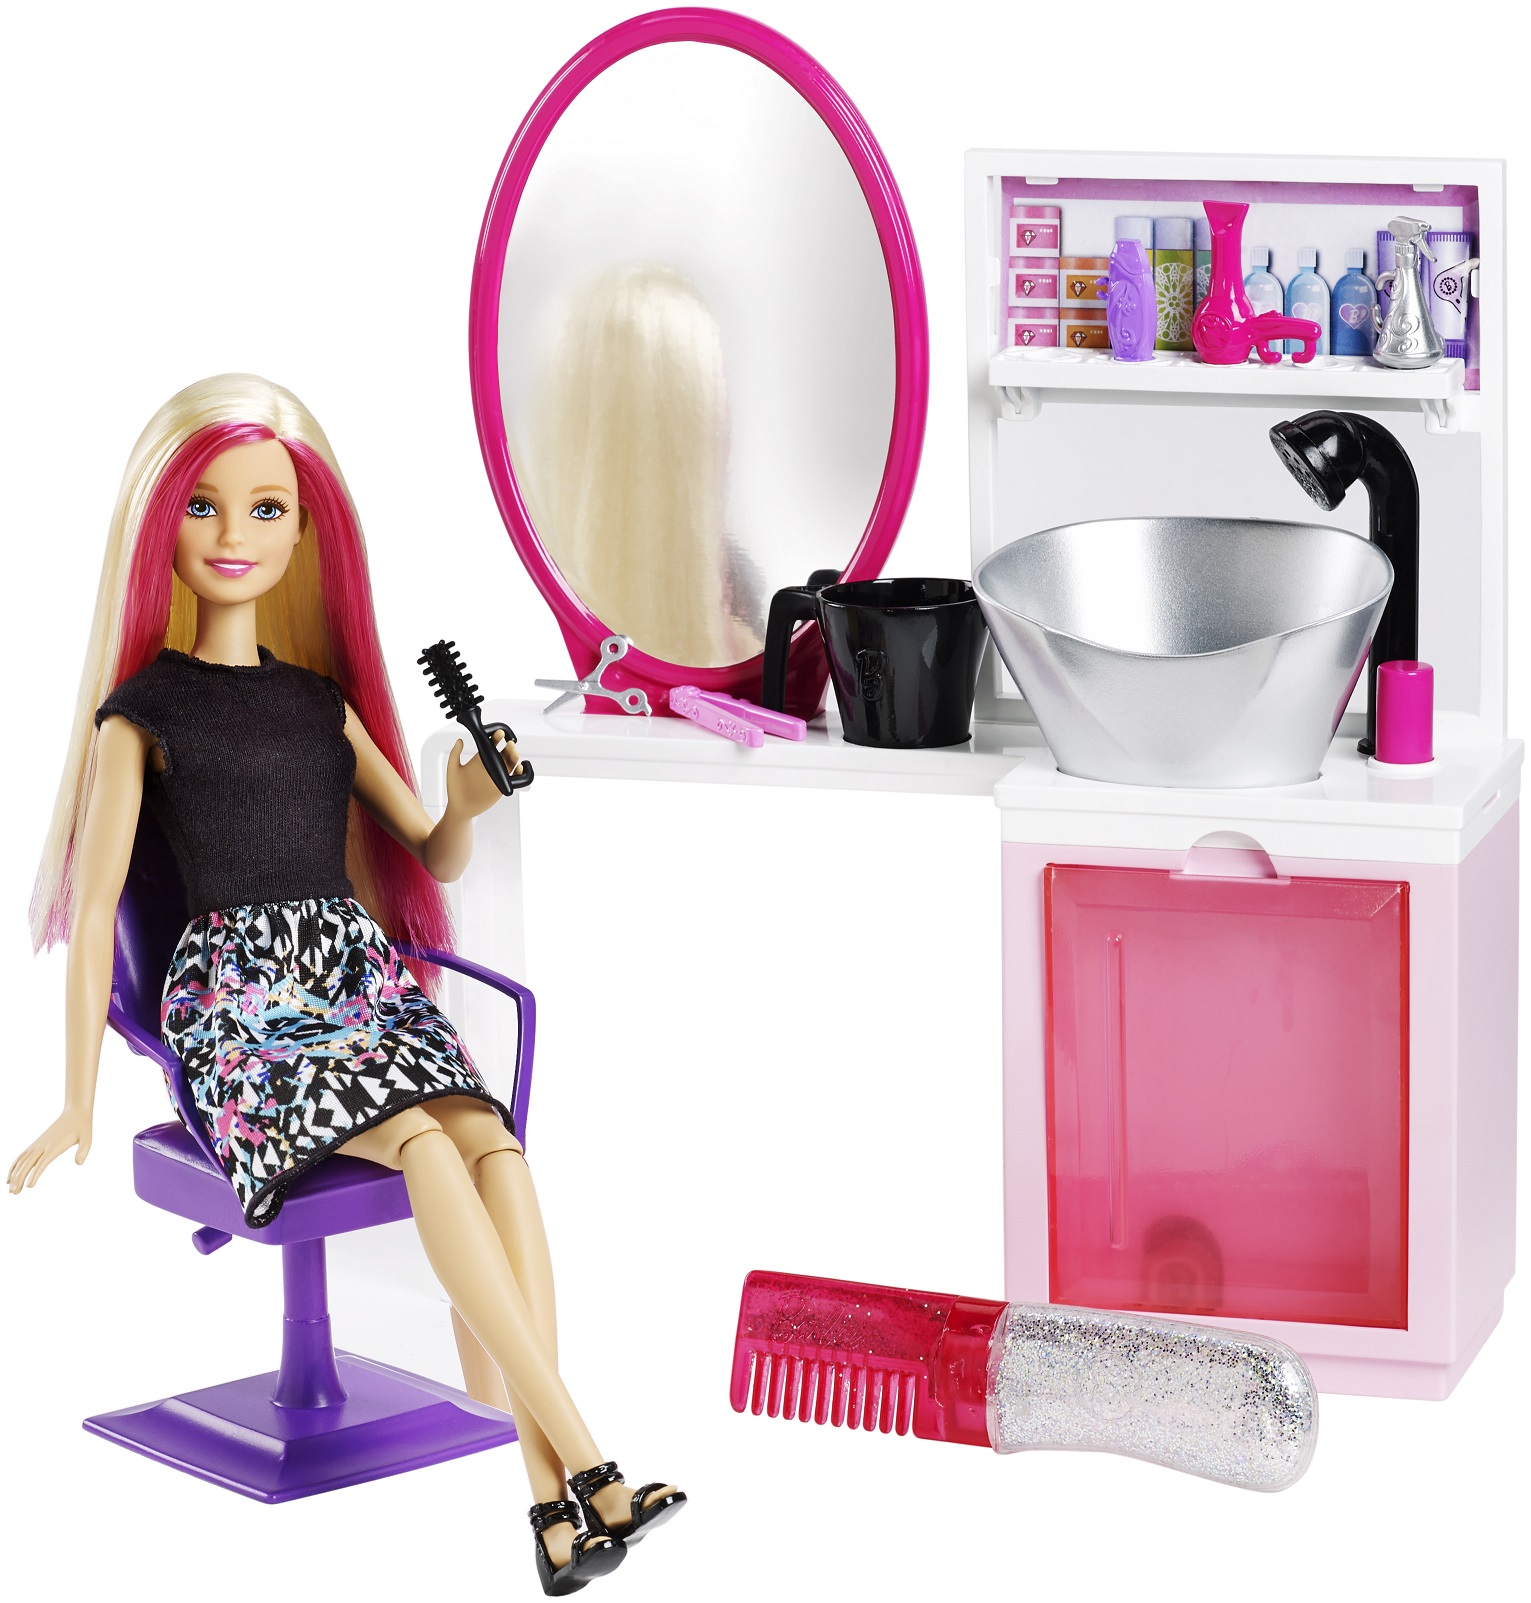 Il mondo di Barbie con tutti i suoi accessori - BUONGIORNO online